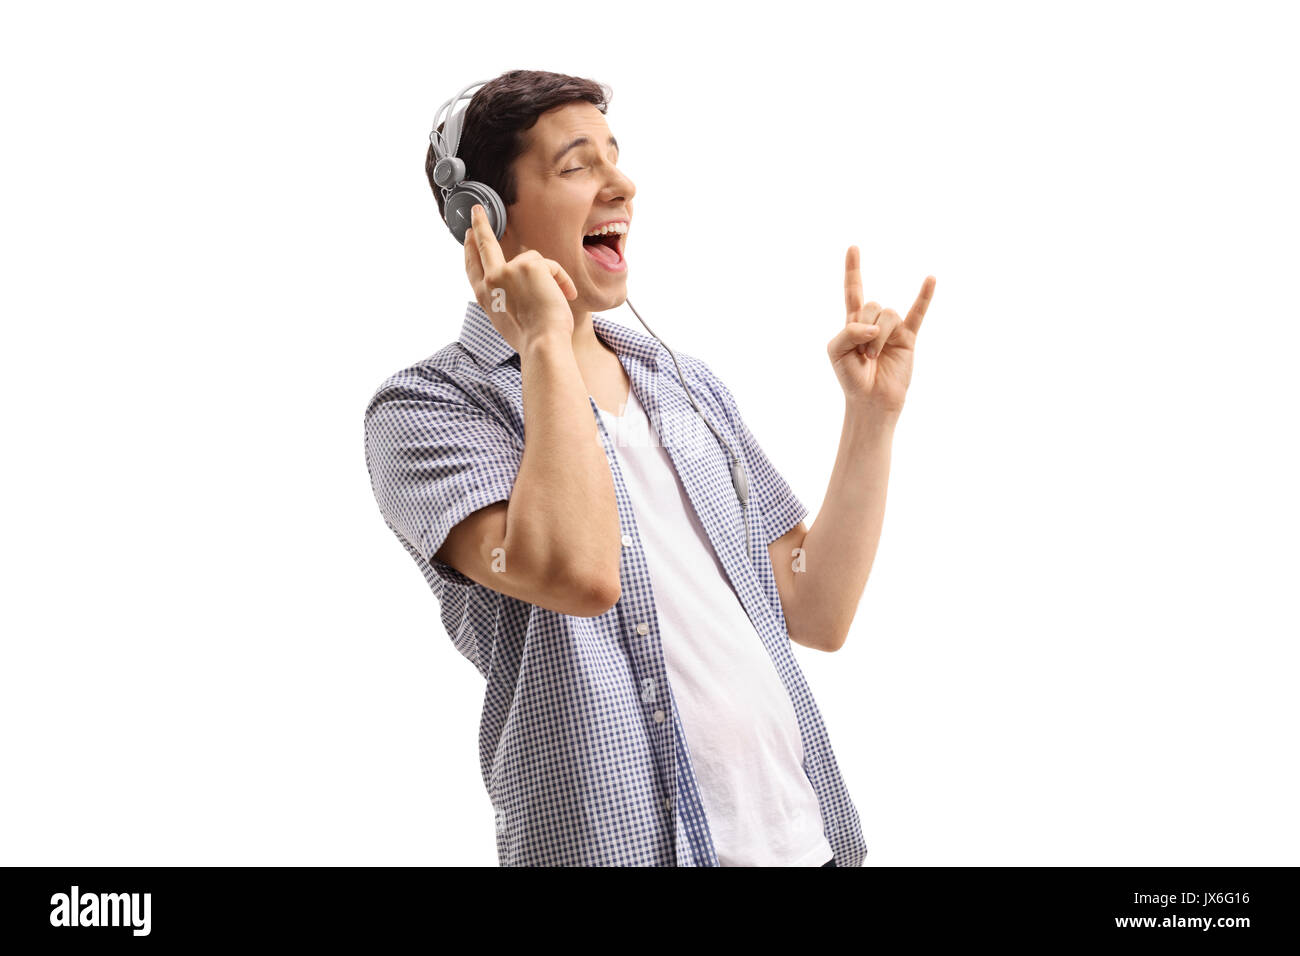 Junger Mann Hören von Musik über Kopfhörer und einen Rock Geste auf weißem Hintergrund Stockfoto